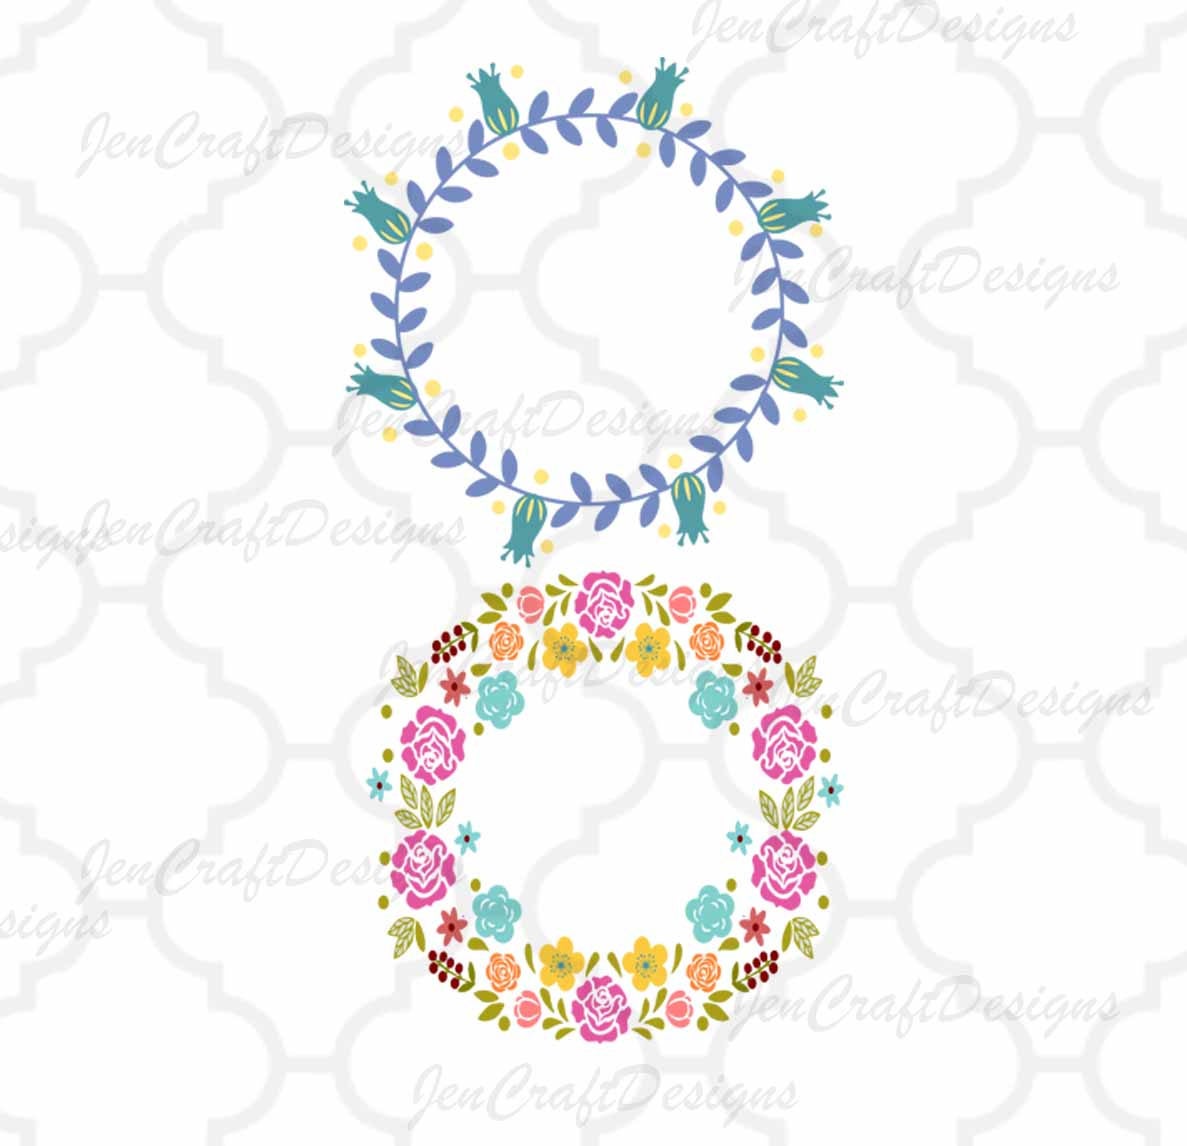 Floral Wreath Monogram Frame Svg Eps Dxf Png Cut File Bundle - JenCraft Designs